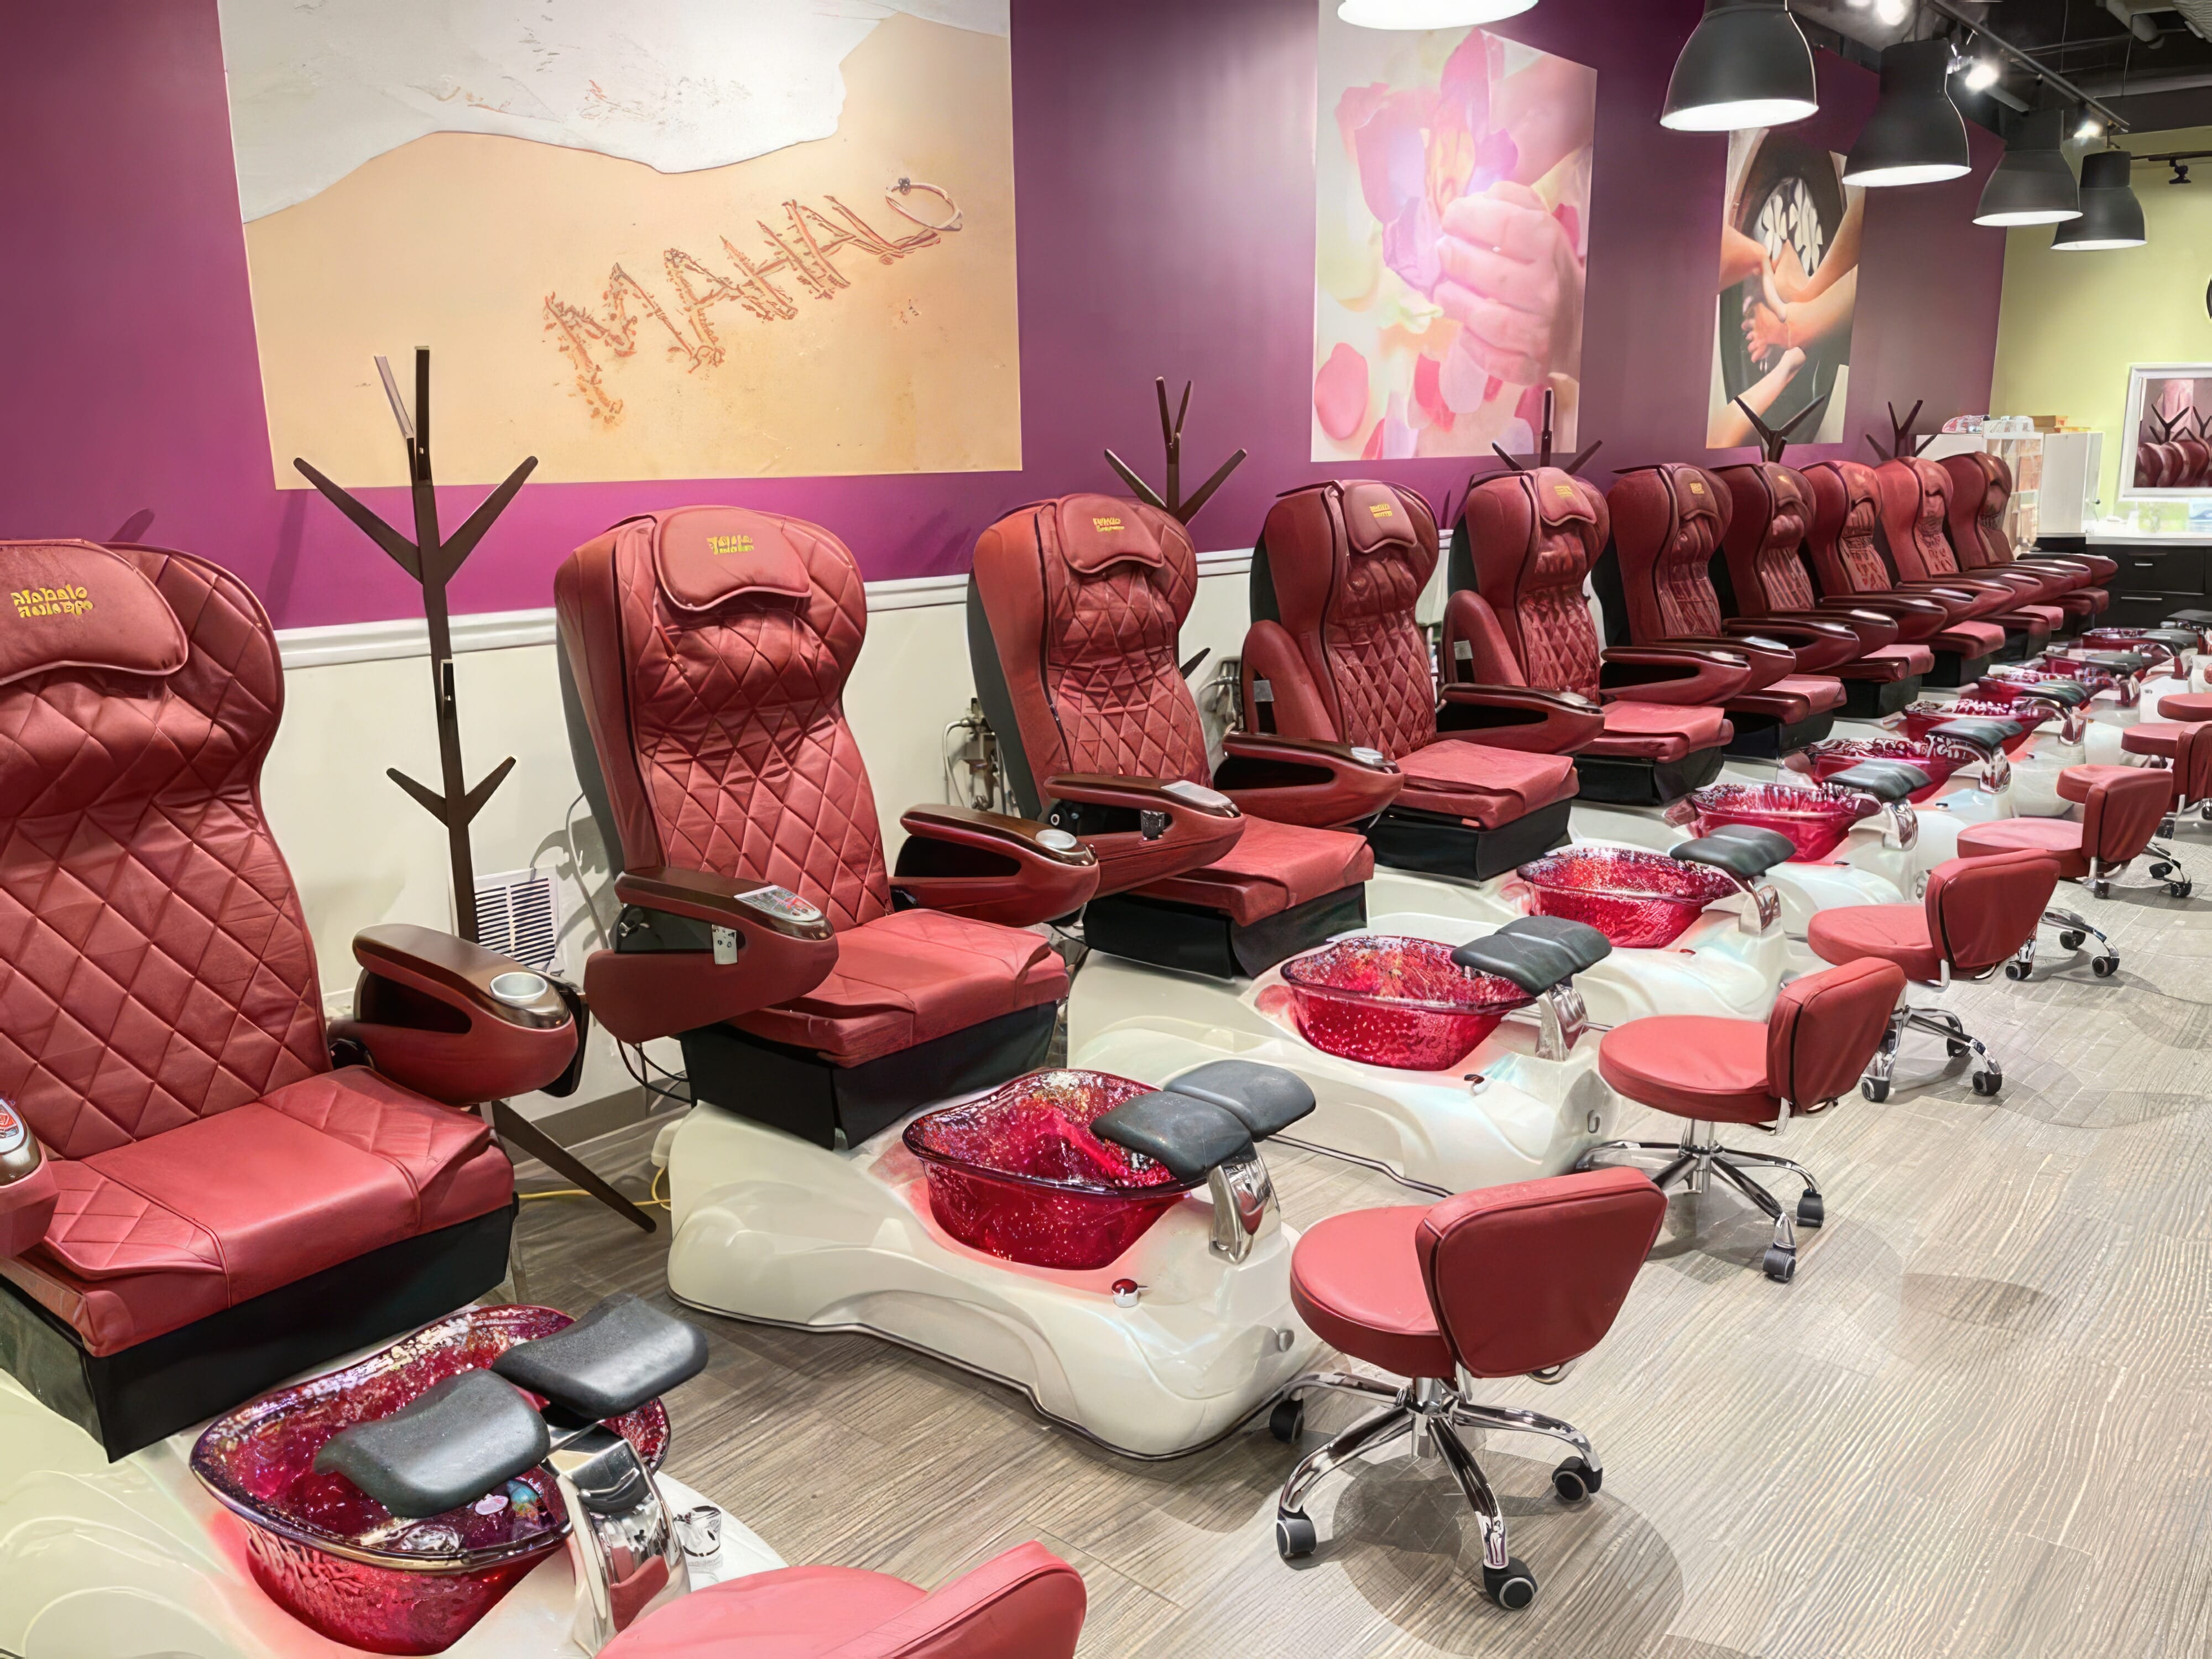 Mahalo Nails Spa interior